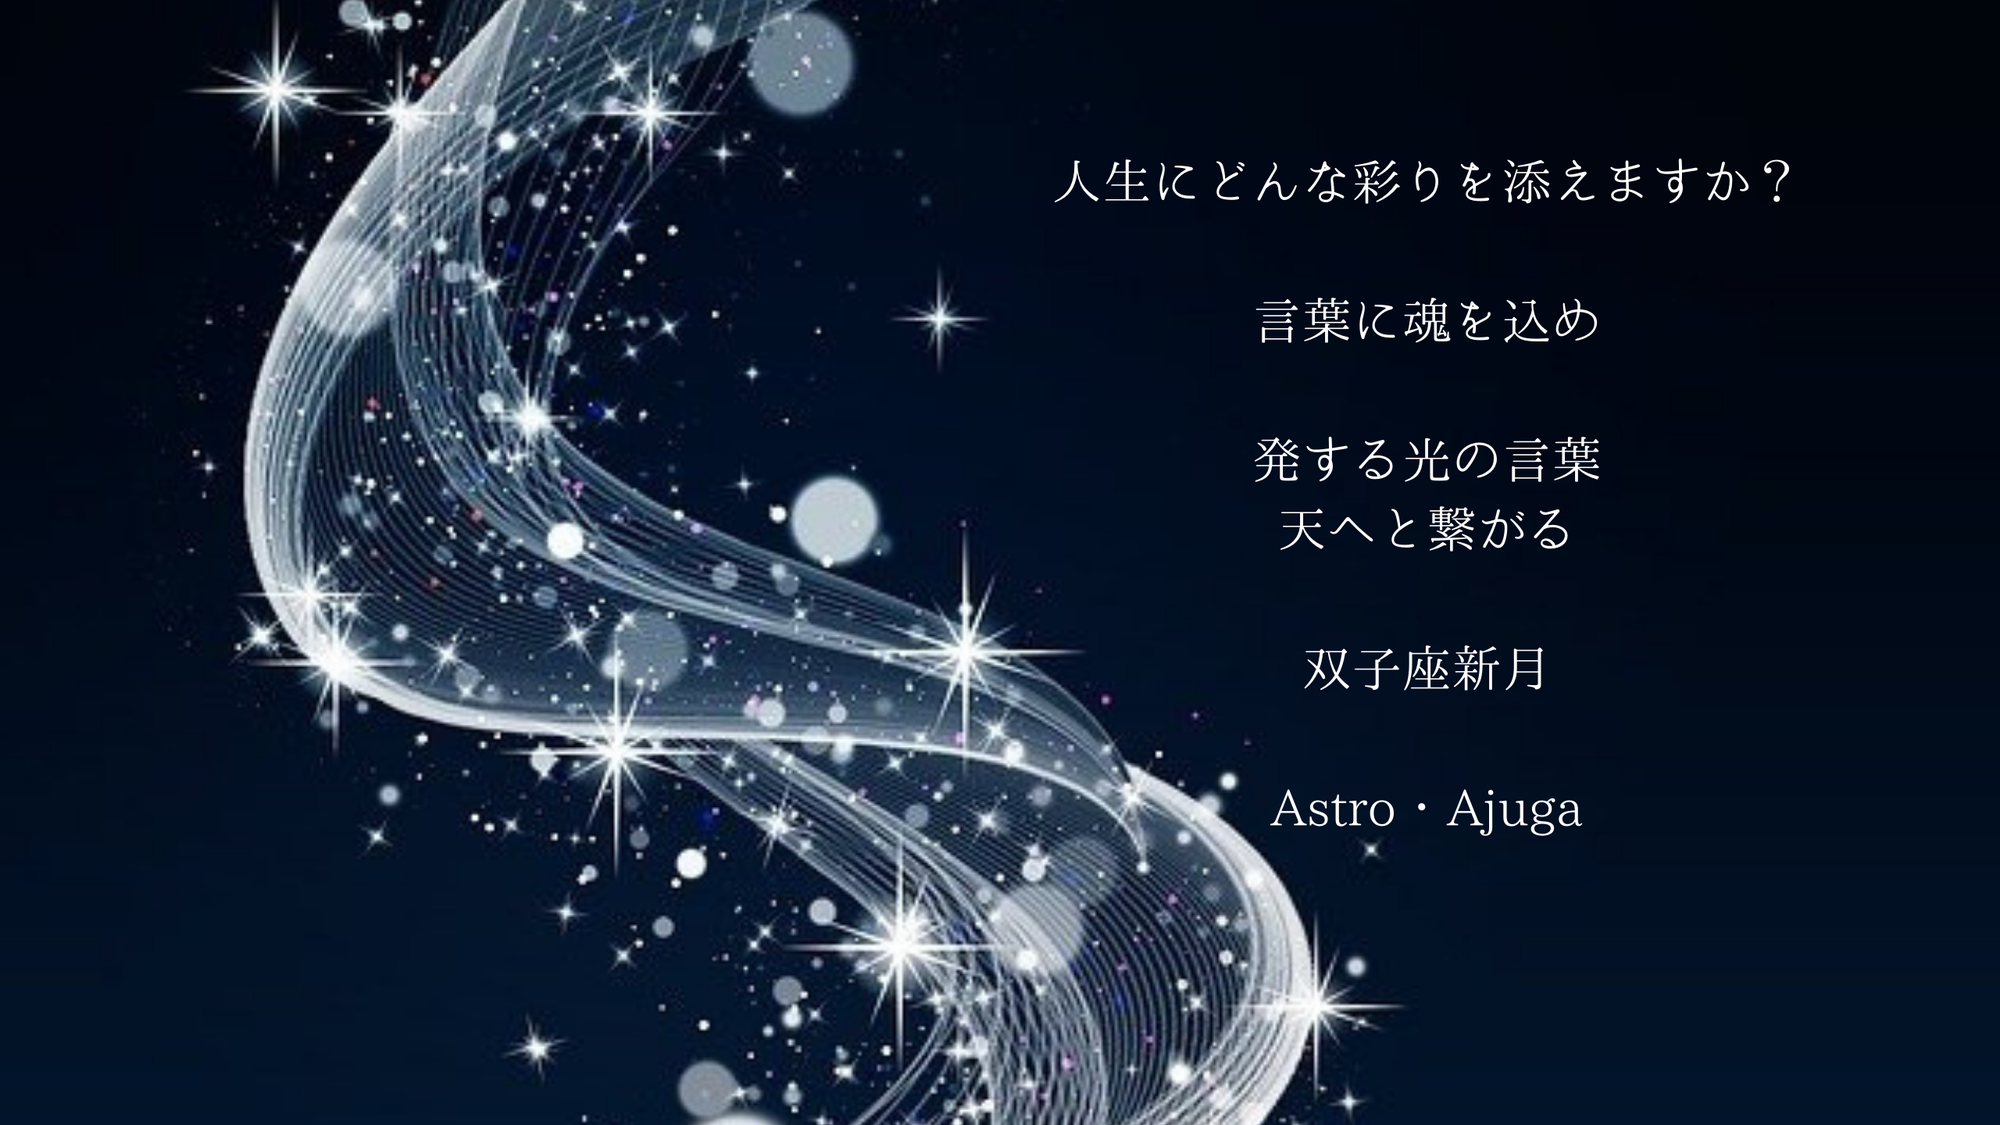 『双子座新月』6月10日「アジュガの星のコトバ」